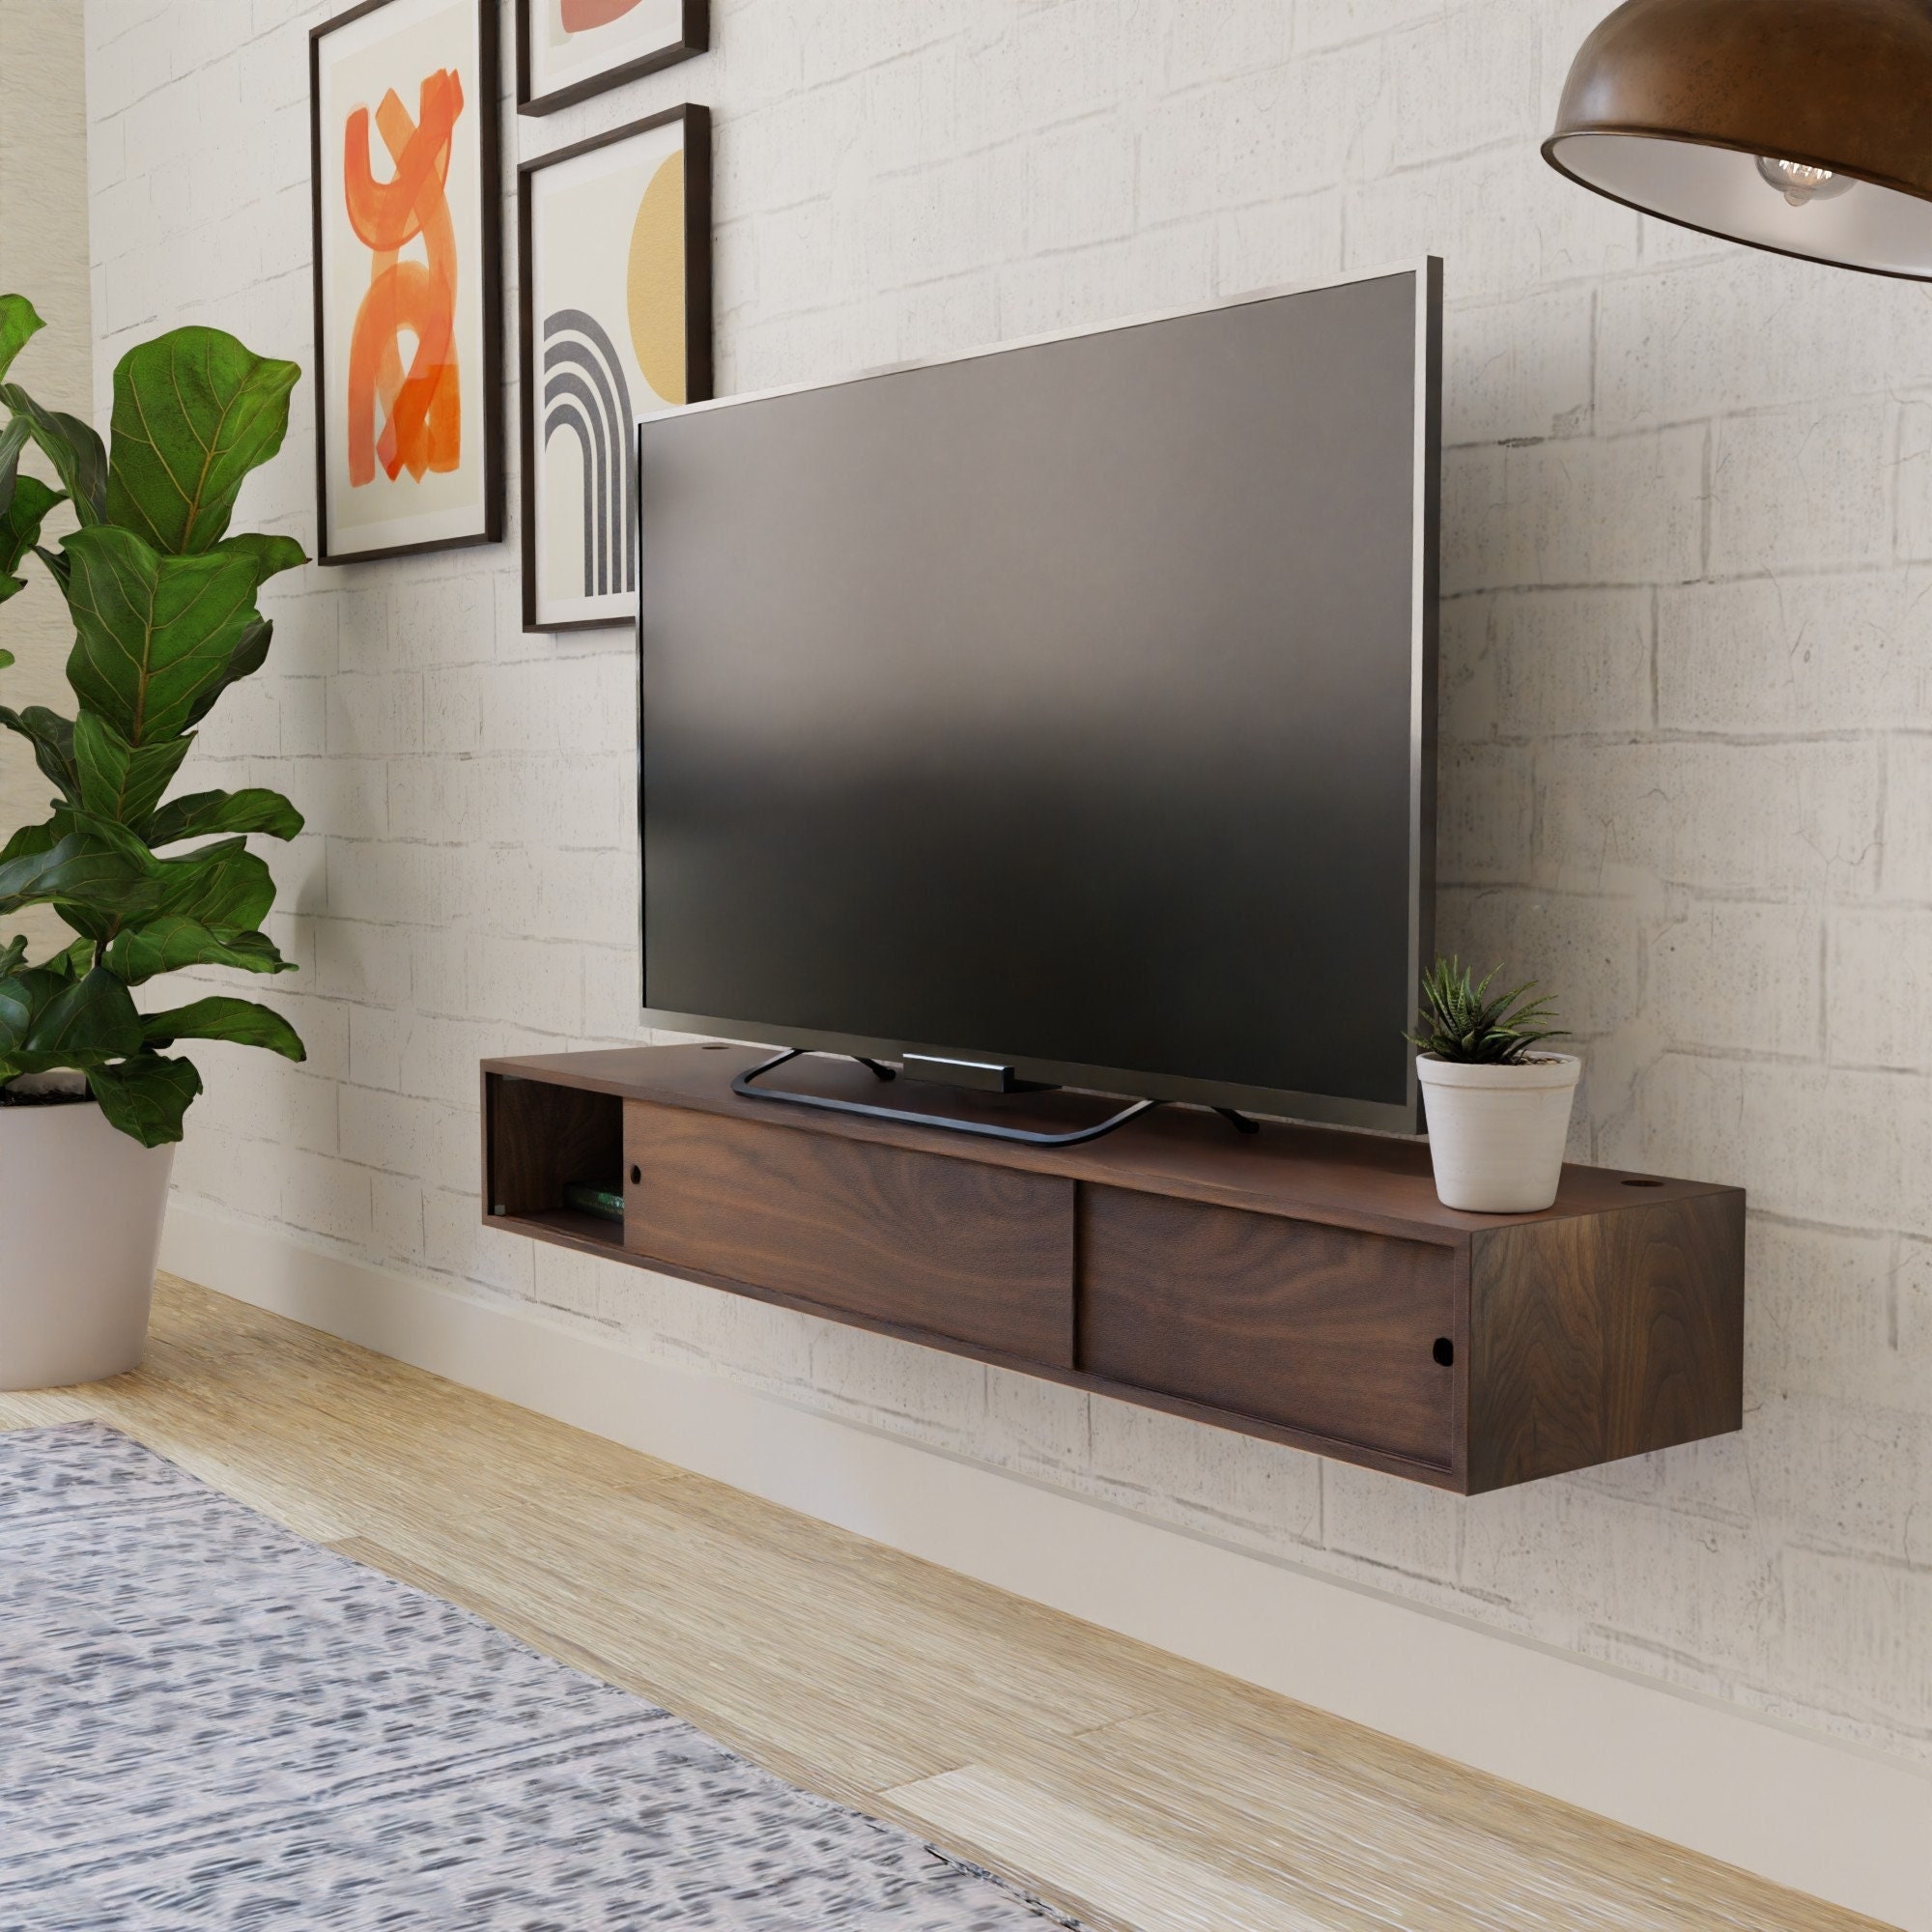  Mesa auxiliar de pared Mueble de TV flotante consola de TV de 2  niveles Soporte de TV Soporte de TV para escritorio de almacenamiento de TV  DELICATEWNN (color: A-55.1 x 9.3